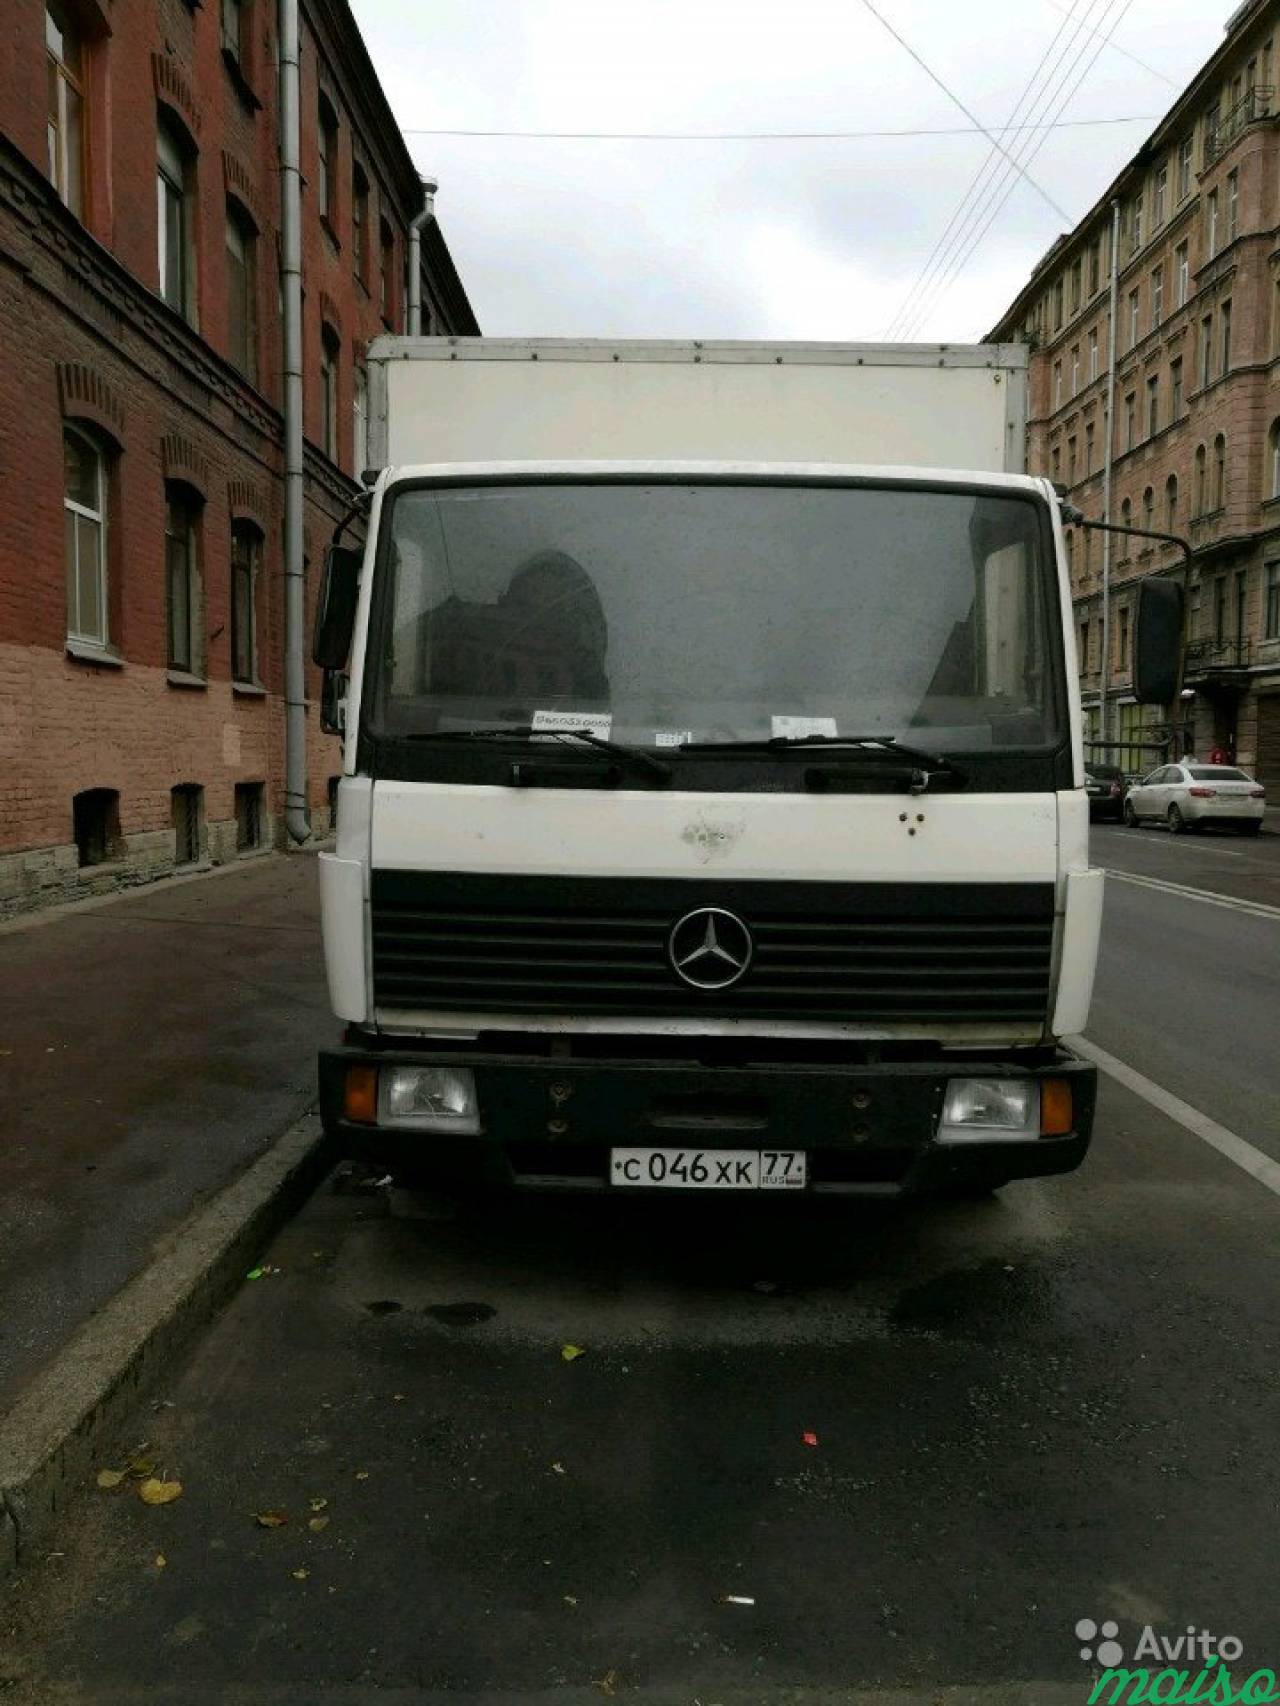 Мерседес 811 фургон изотермический в Санкт-Петербурге. Фото 3